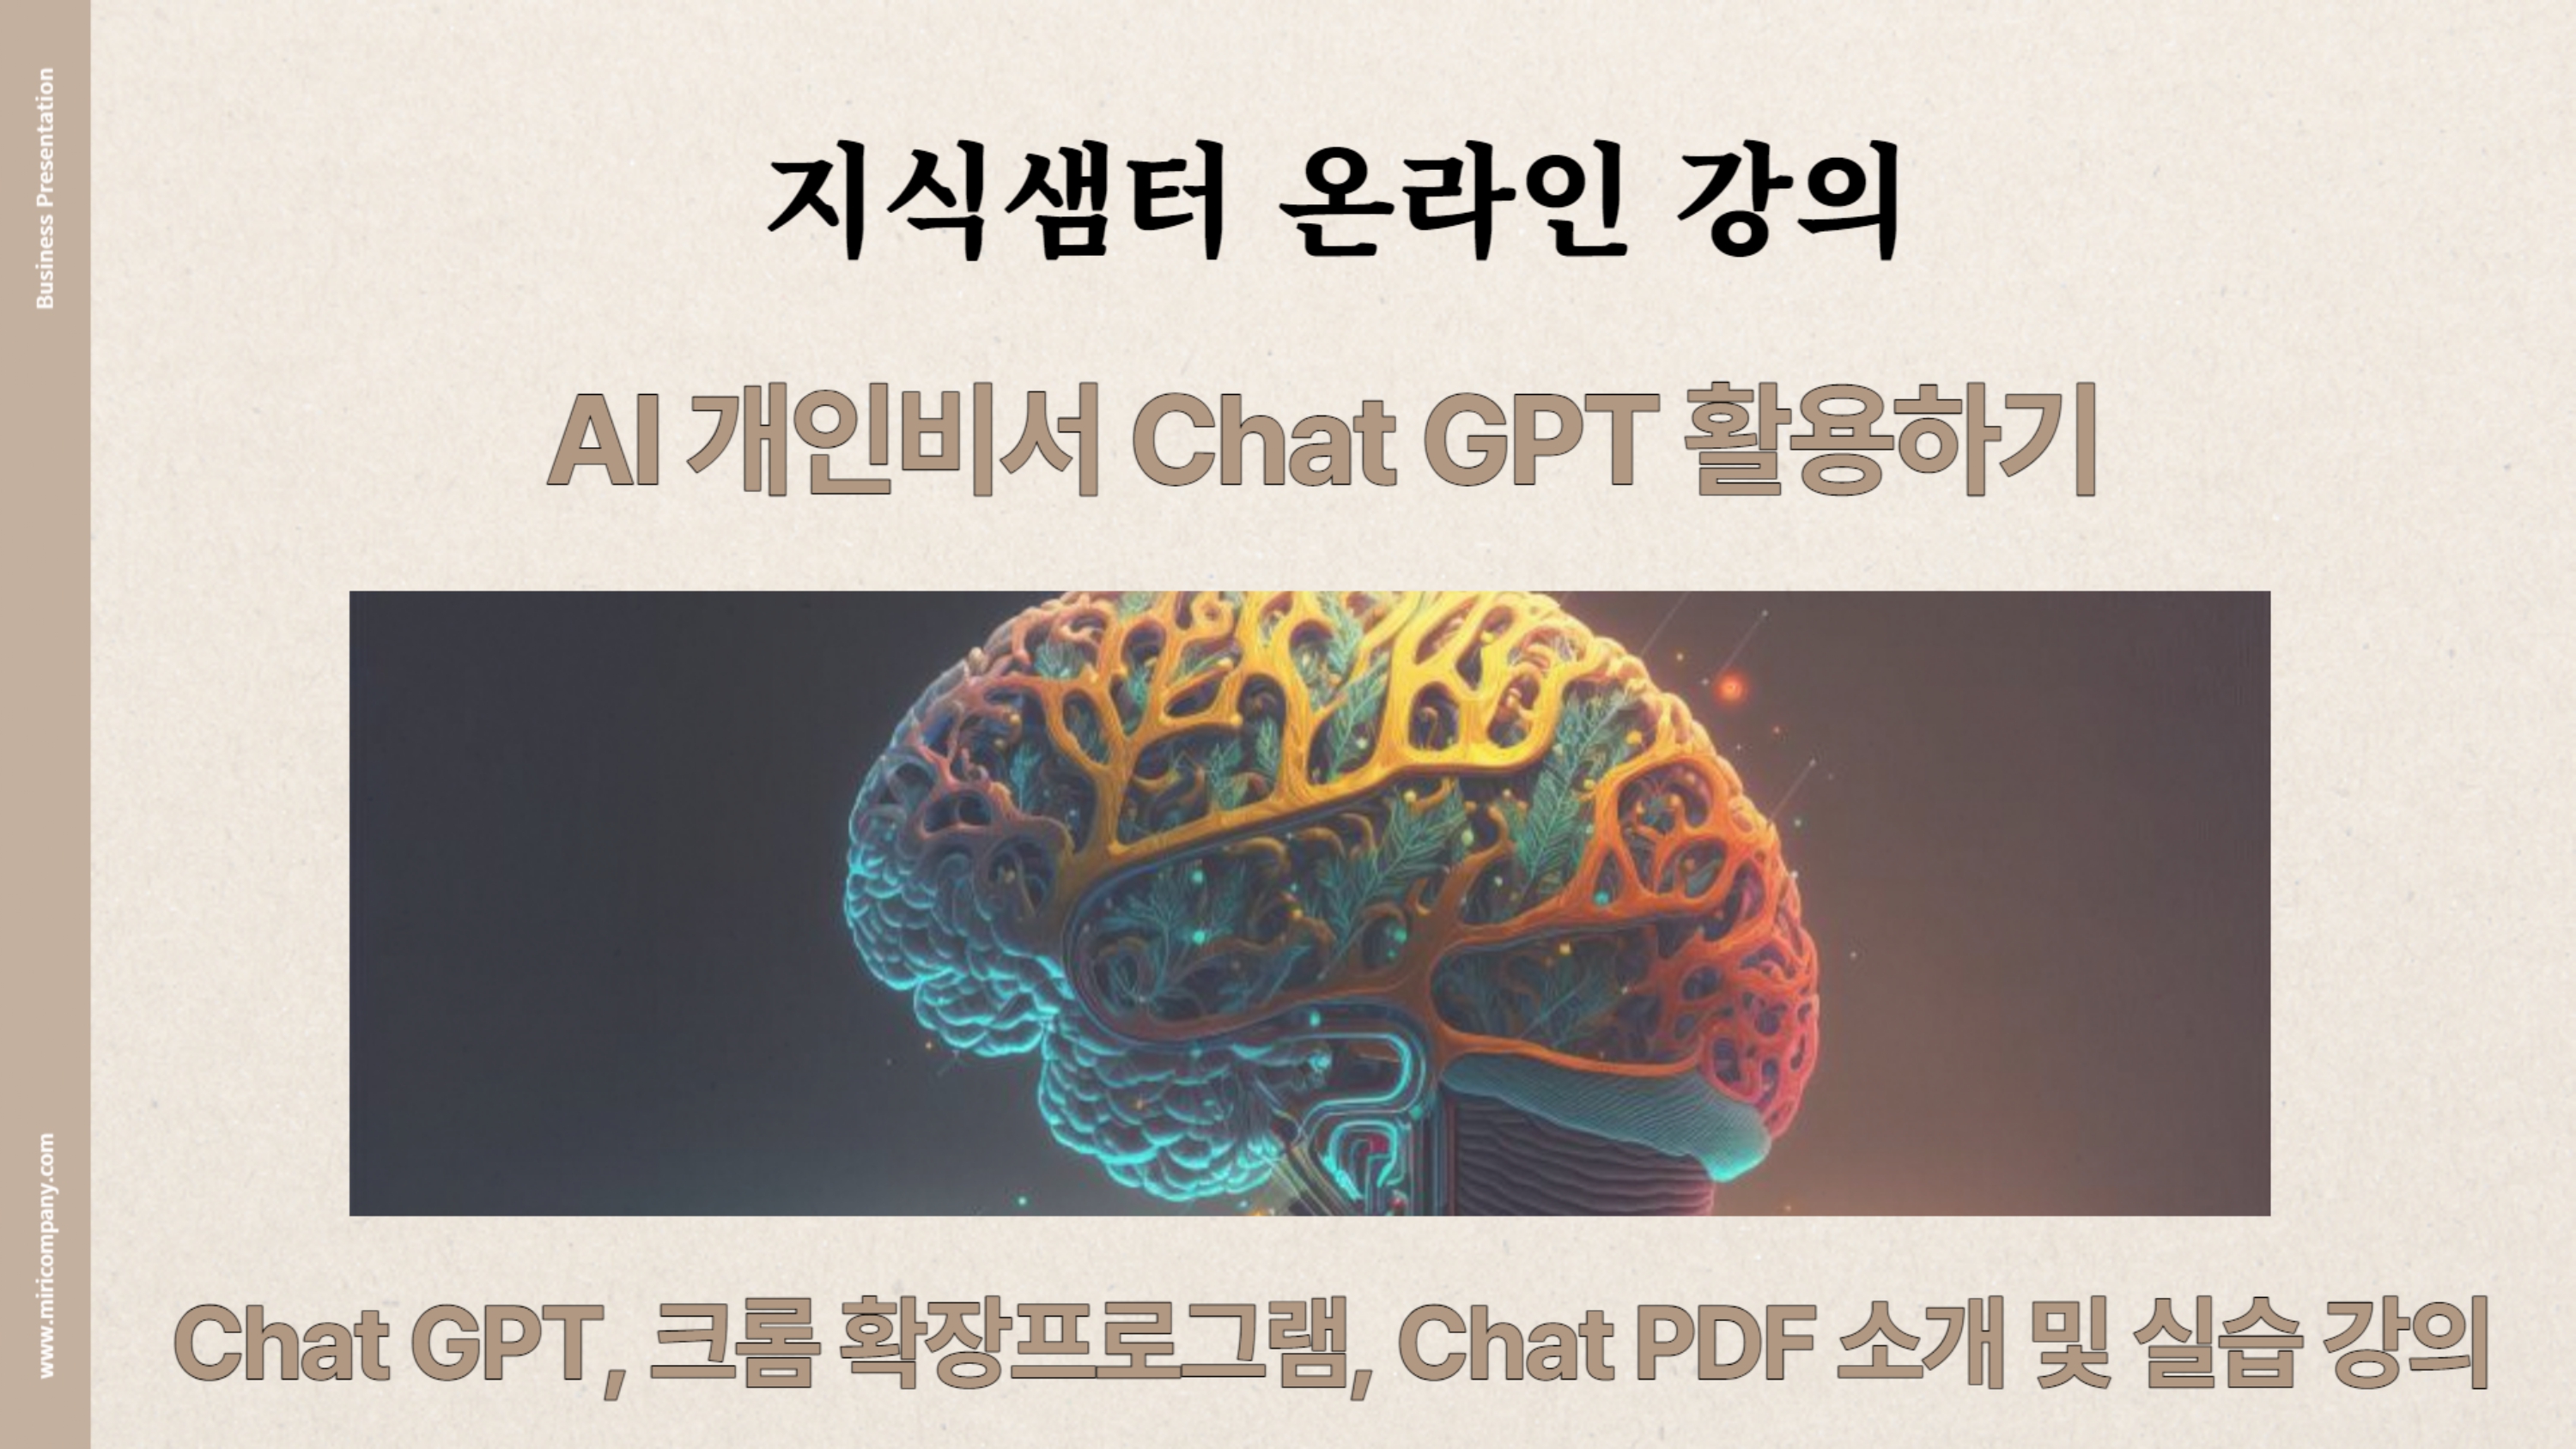 AI전성시대 Chat GPT 알아보기